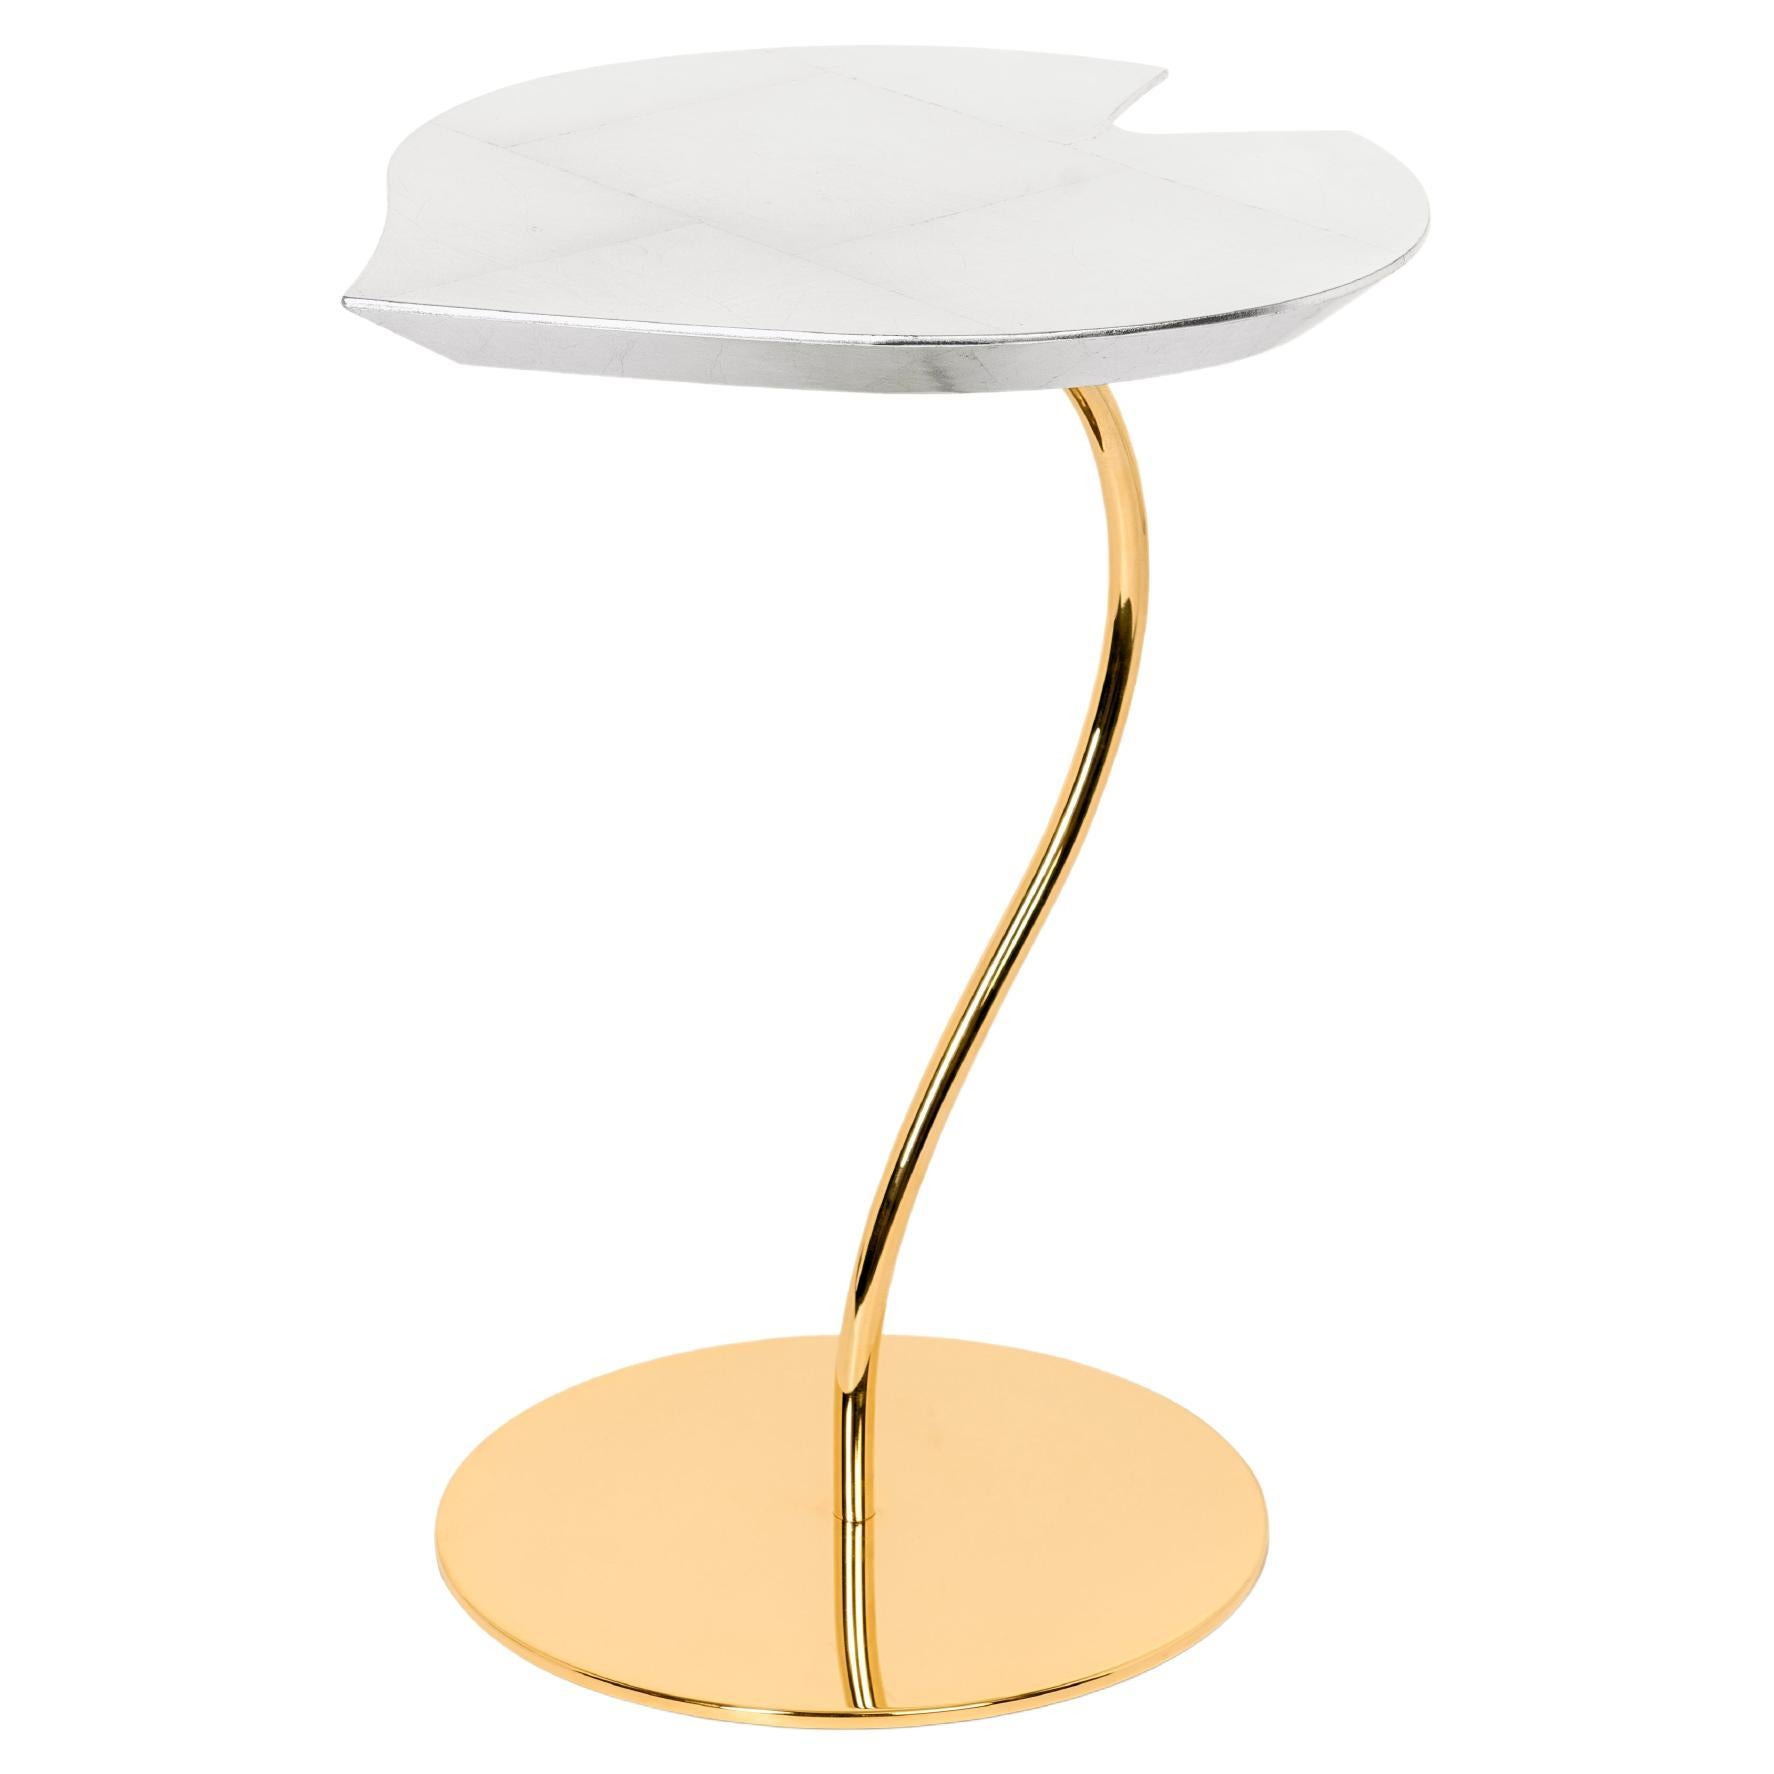 Petite table en bois de feuilles, plateau en feuilles d'argent, base en métal, finition en or 24 carats, Italie